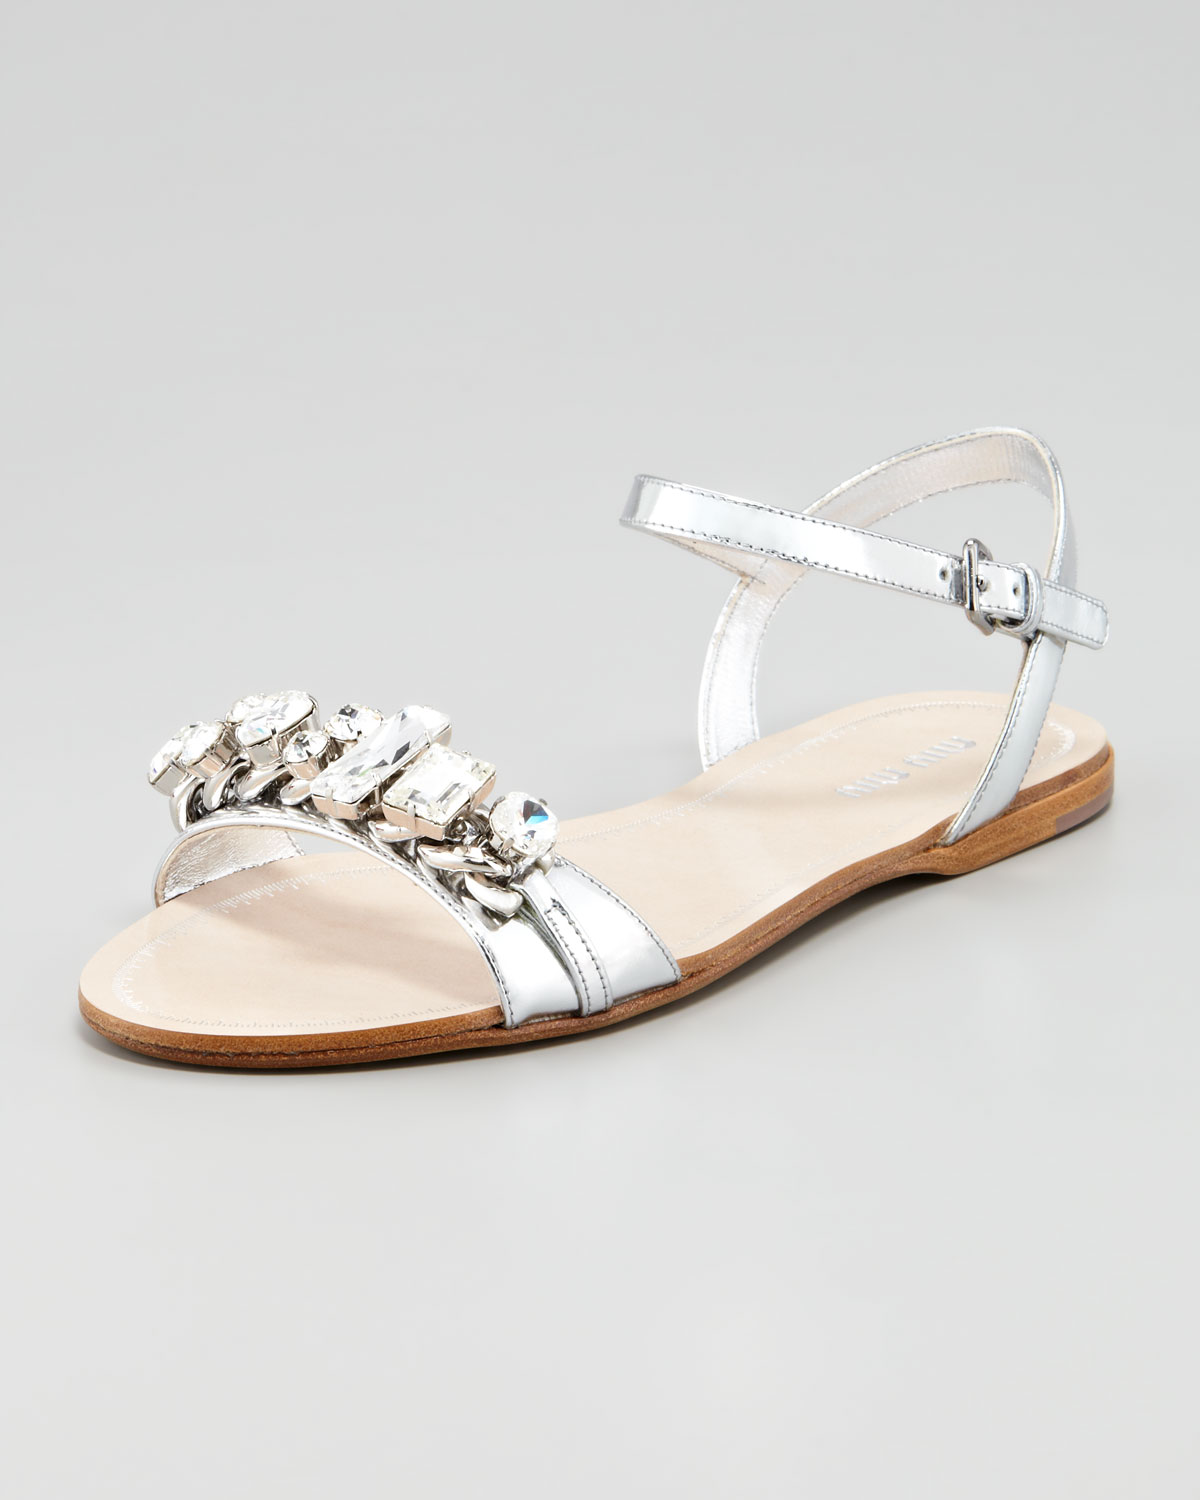 Lyst - Miu Miu Crystal Strap Flat Sandals in Metallic